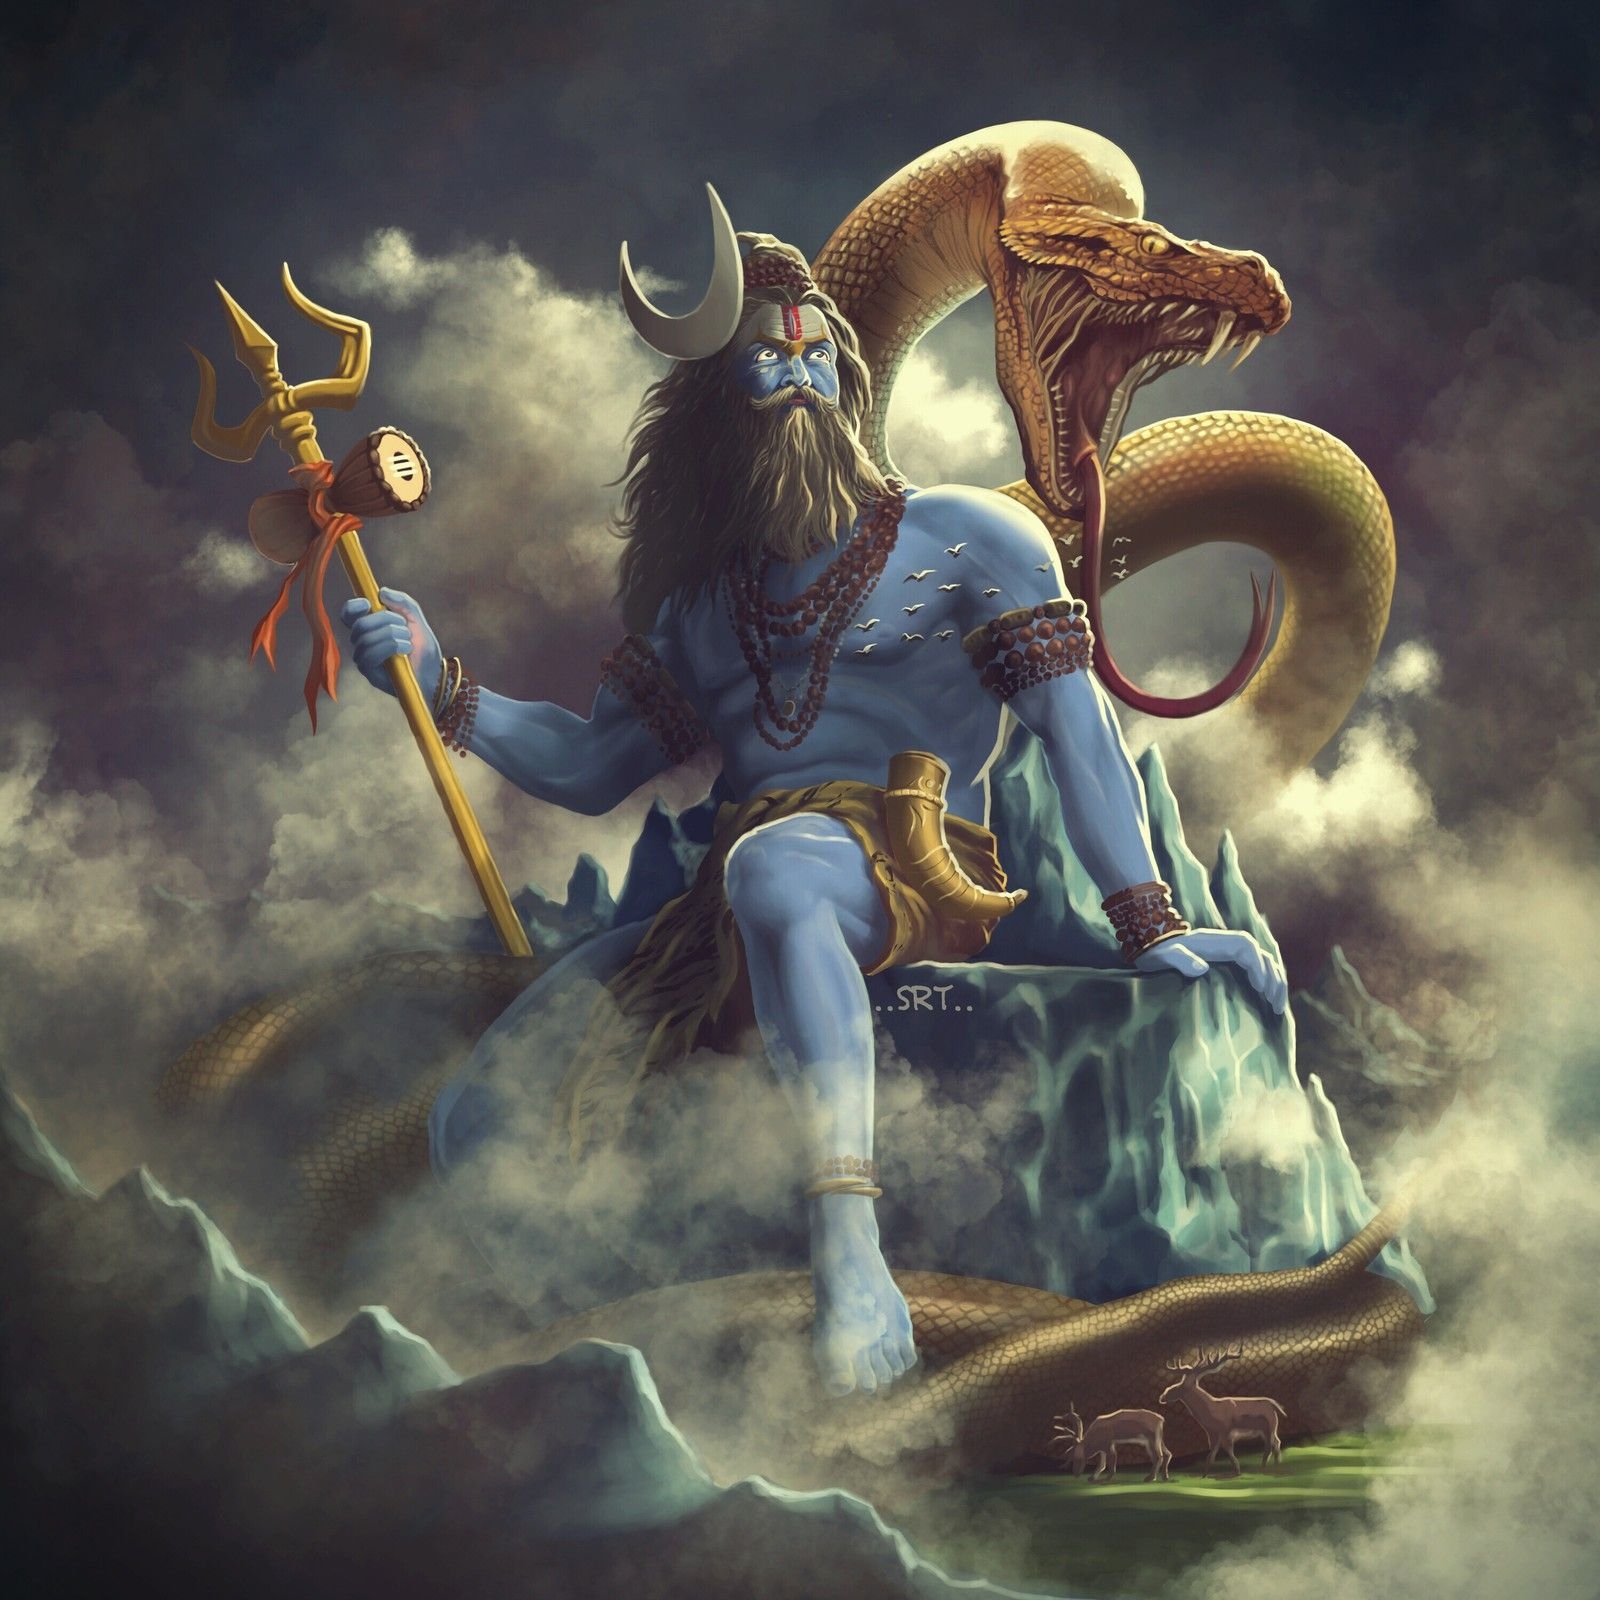 Rudra Shiva - Animated